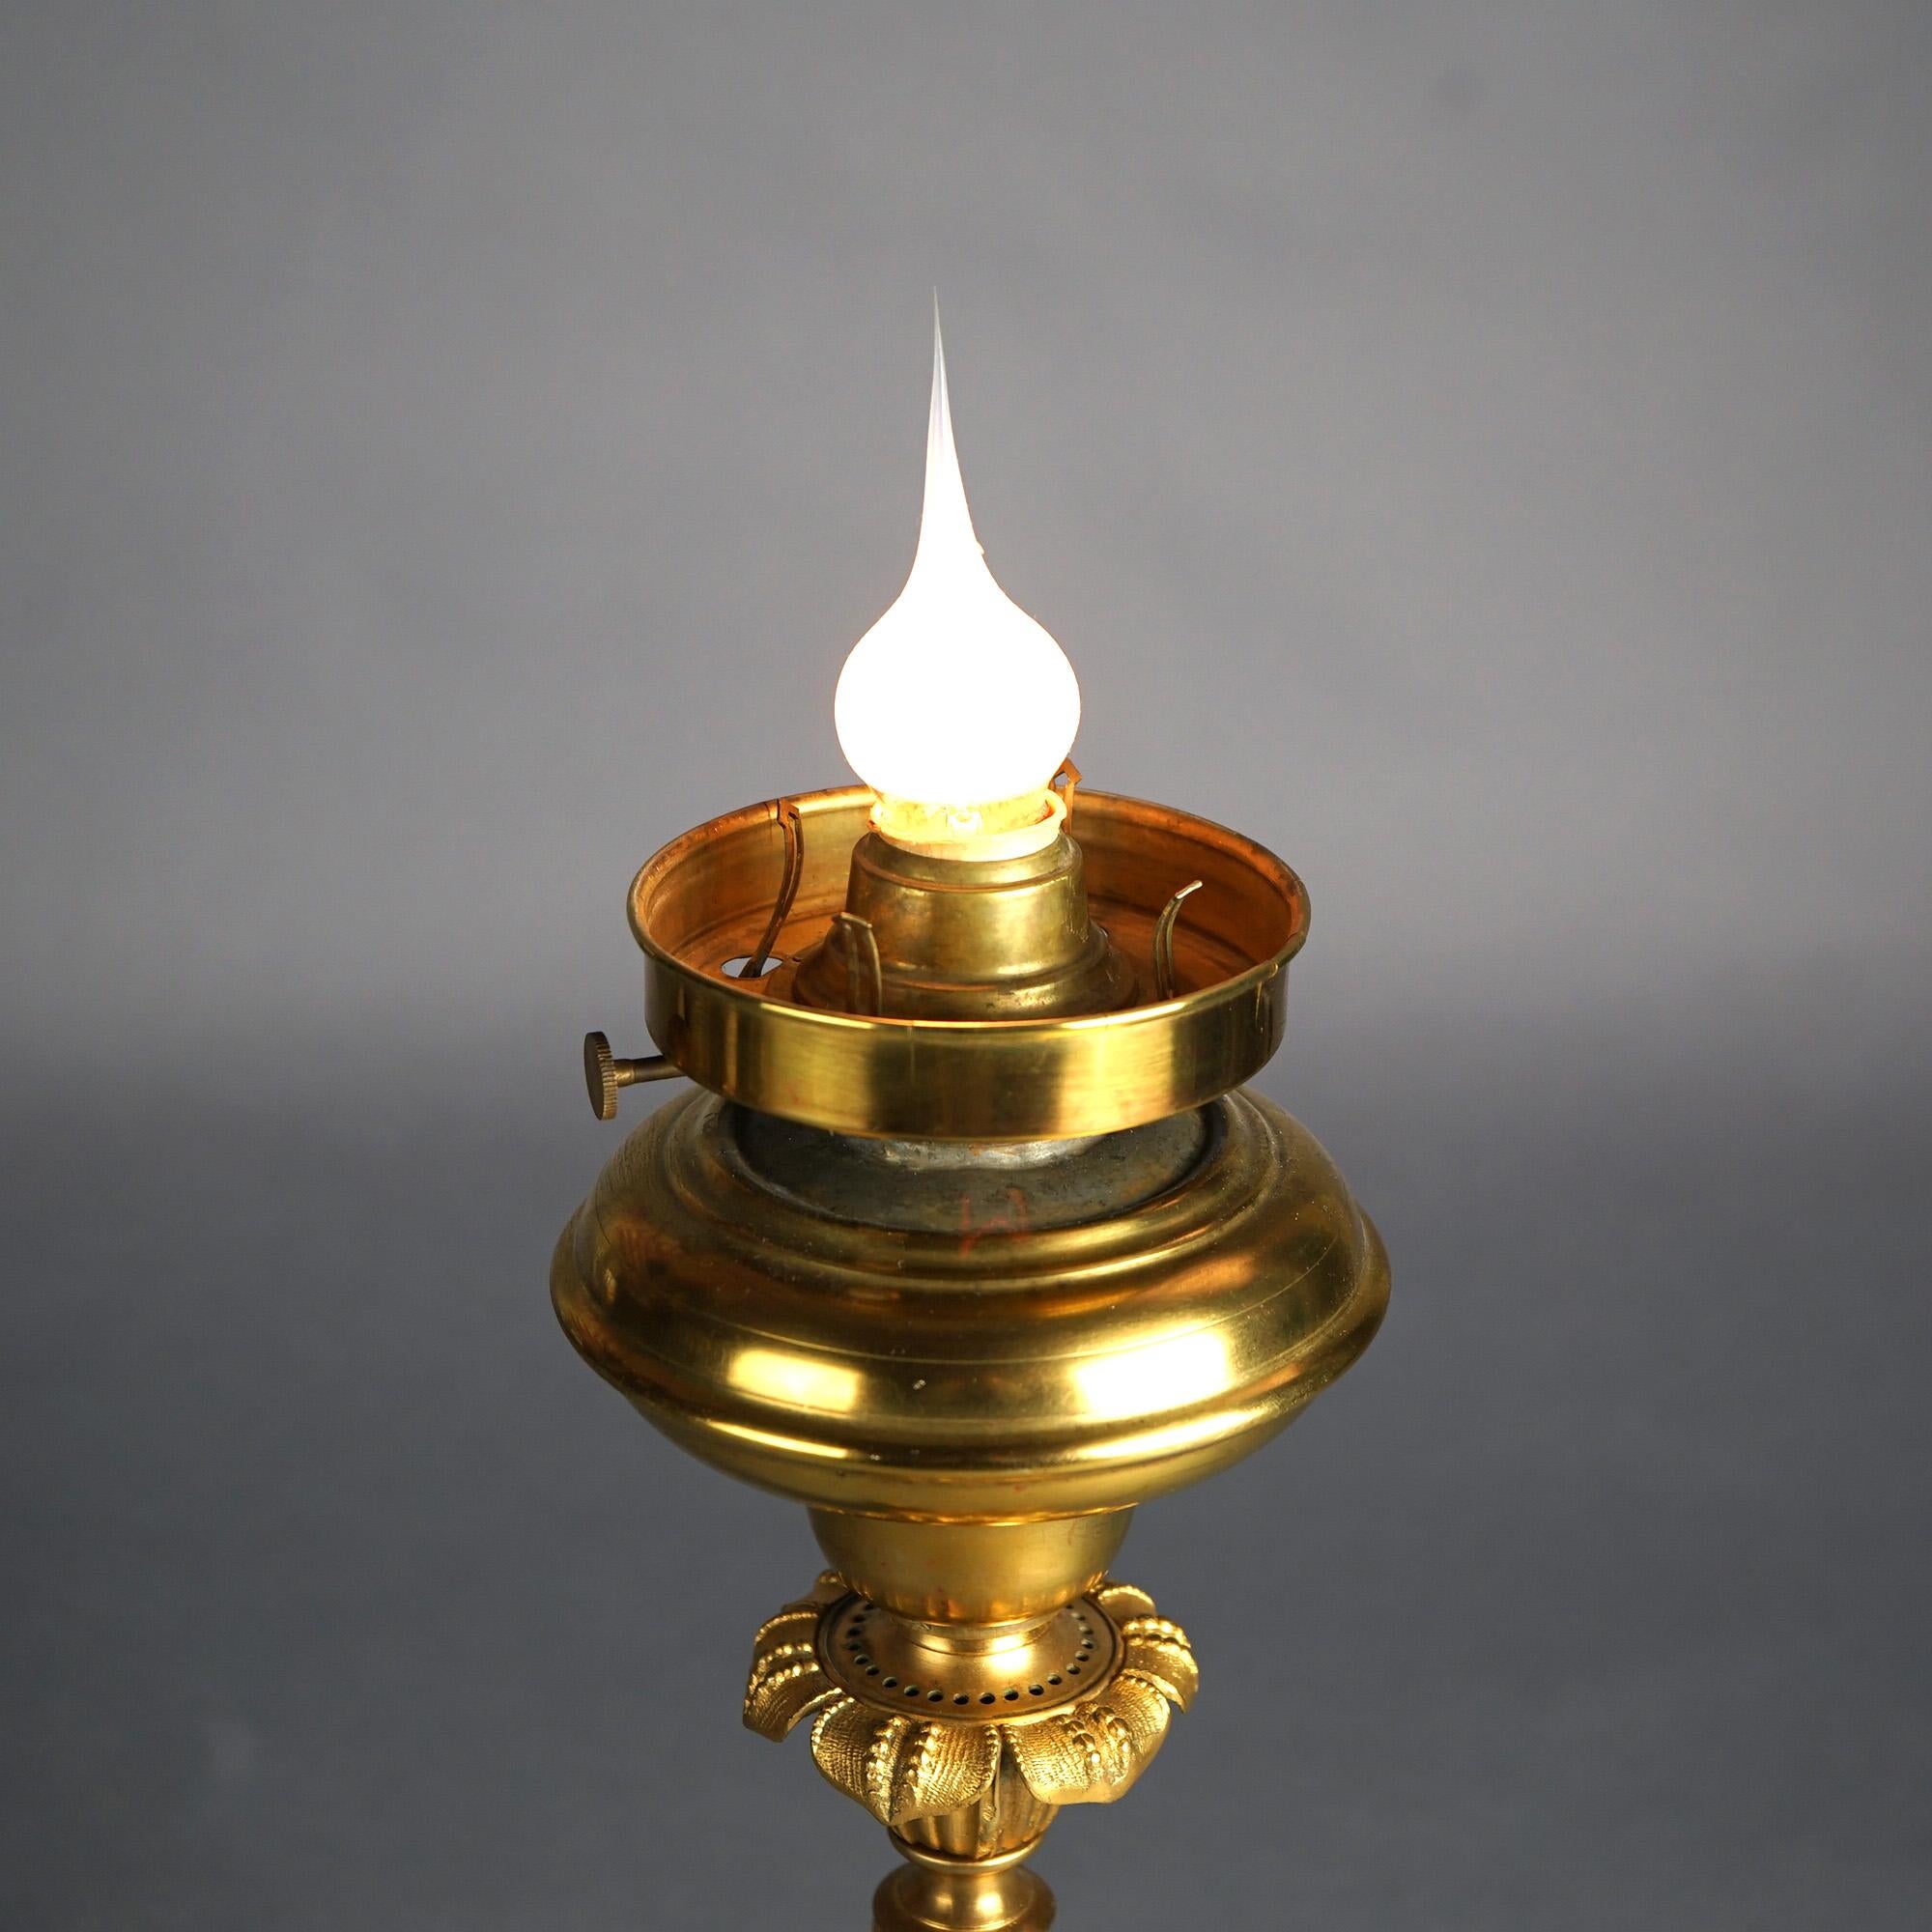 Antique Cornelius School Gilt Bronze Solar Lamp with Cut Glass Shade C1840 9